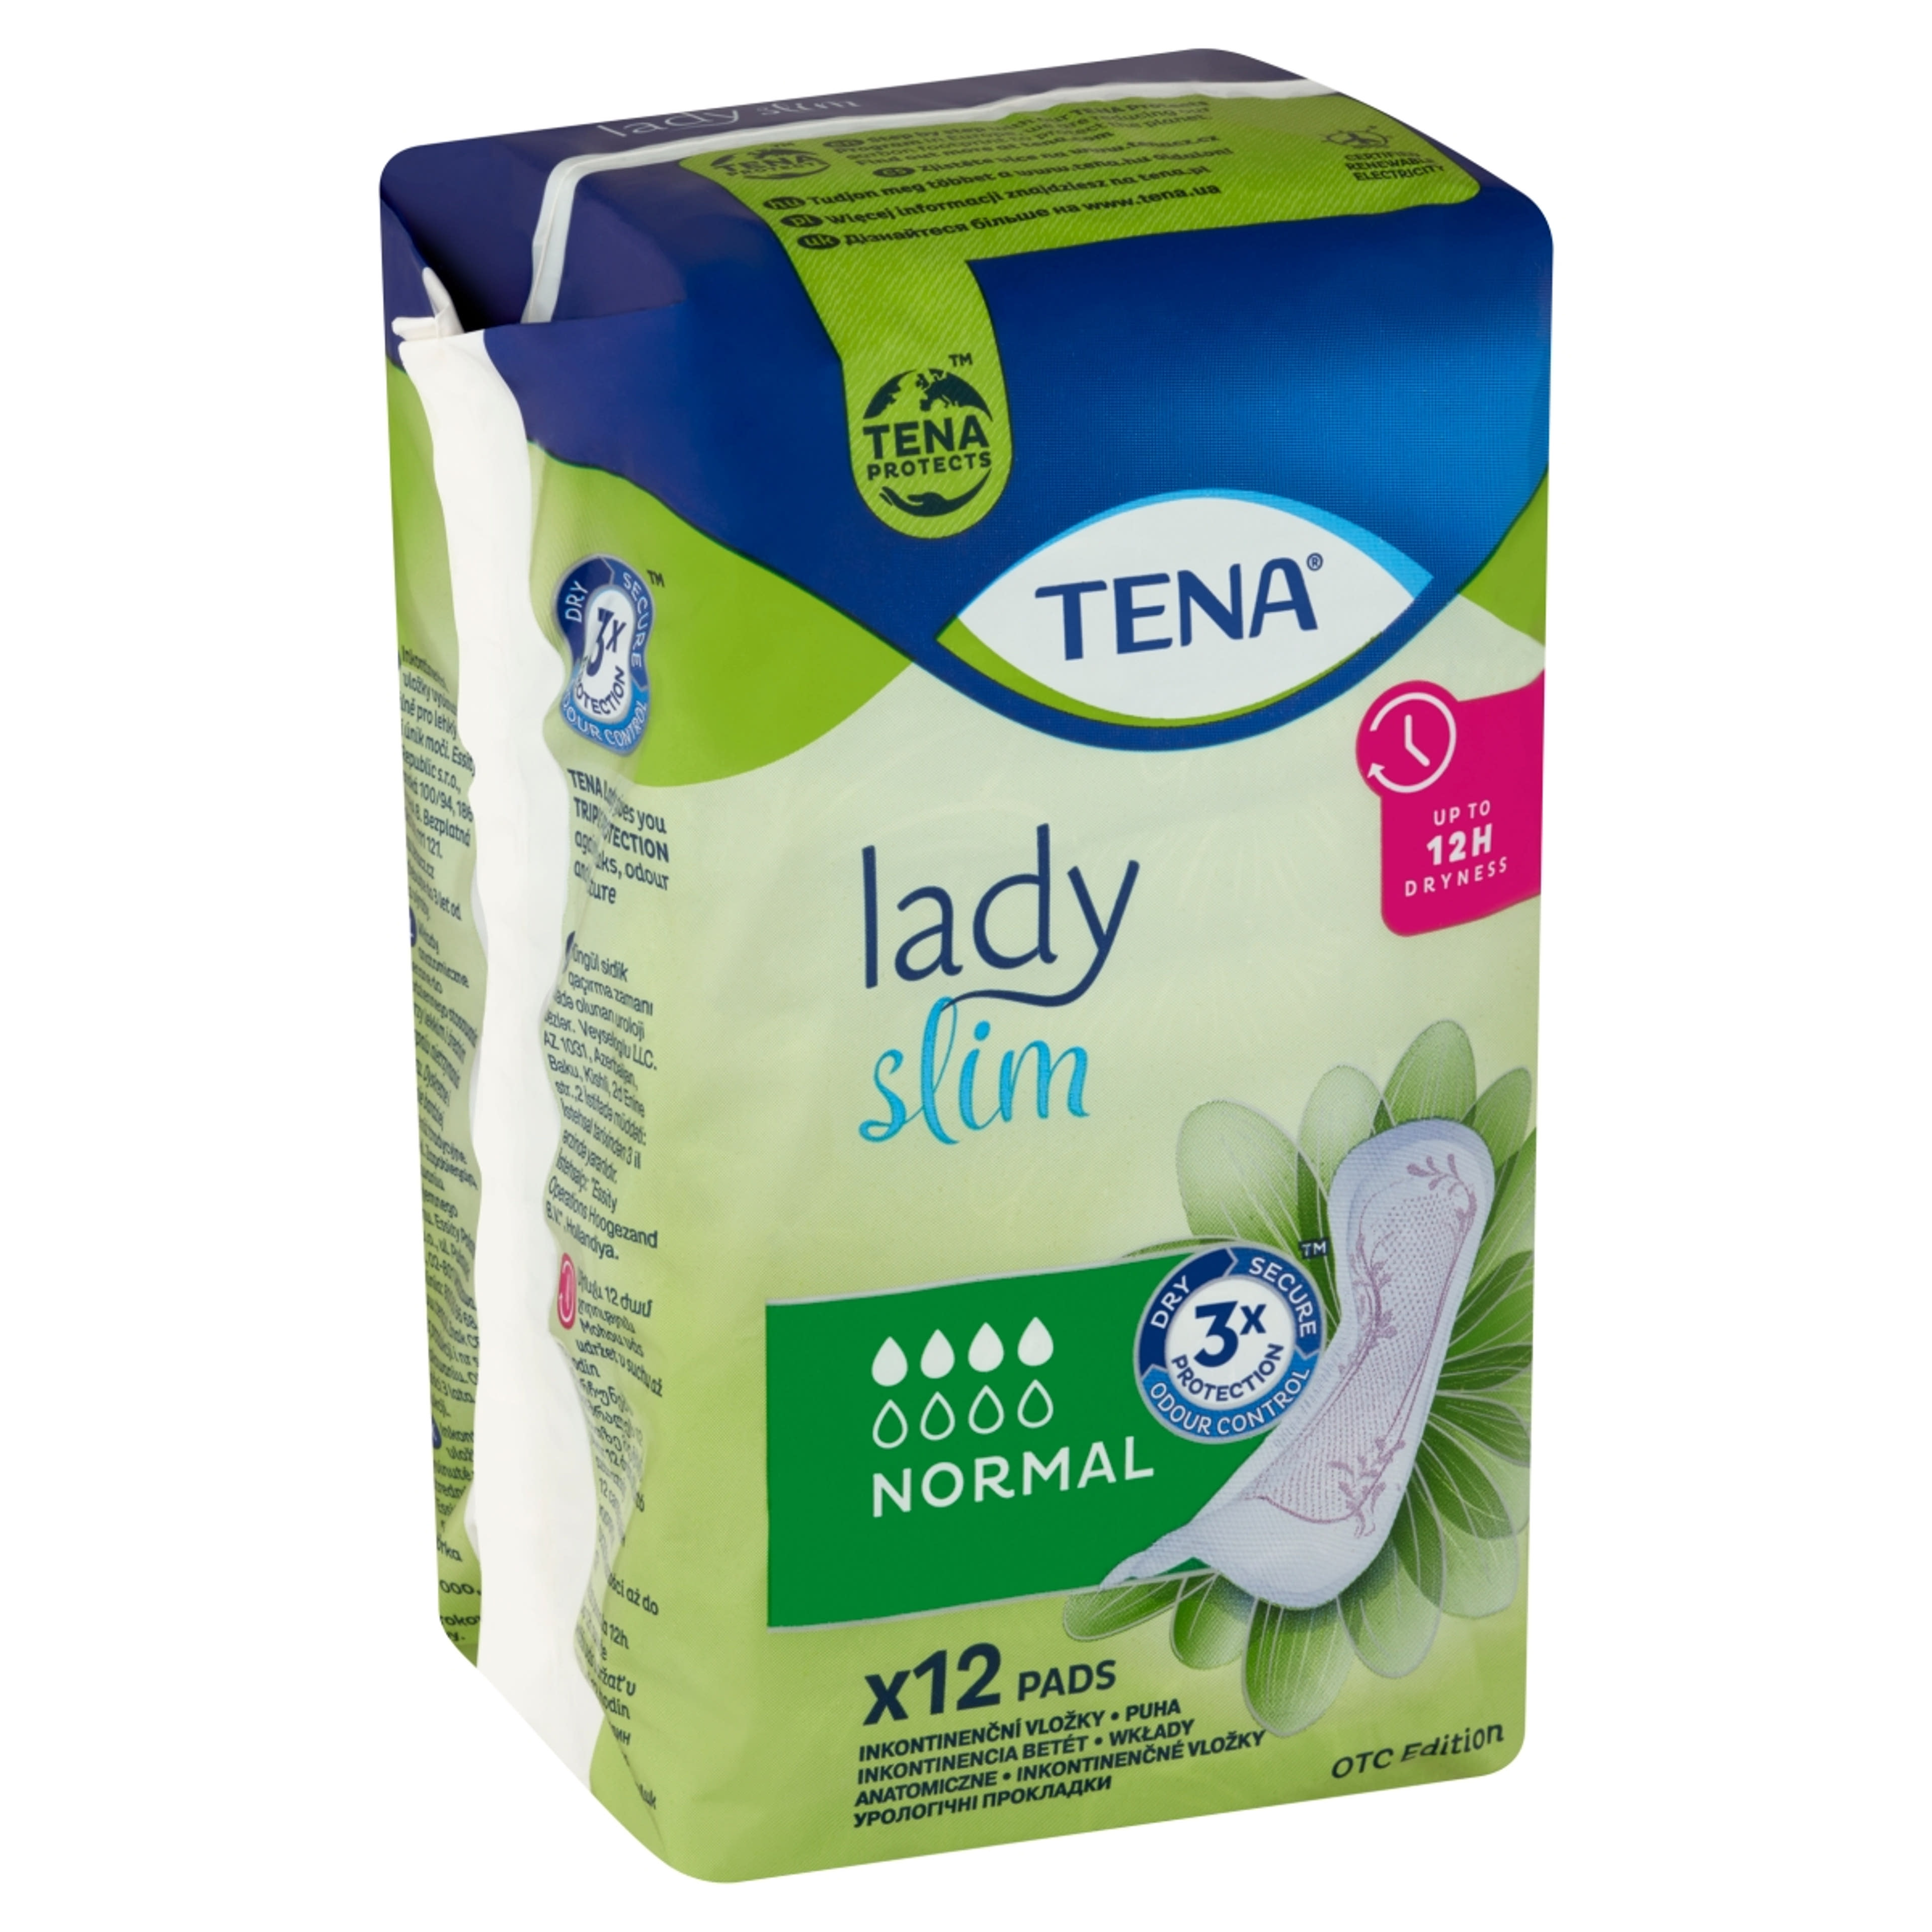 Tena lady slim normál inkontinencia betét - 12 db-2